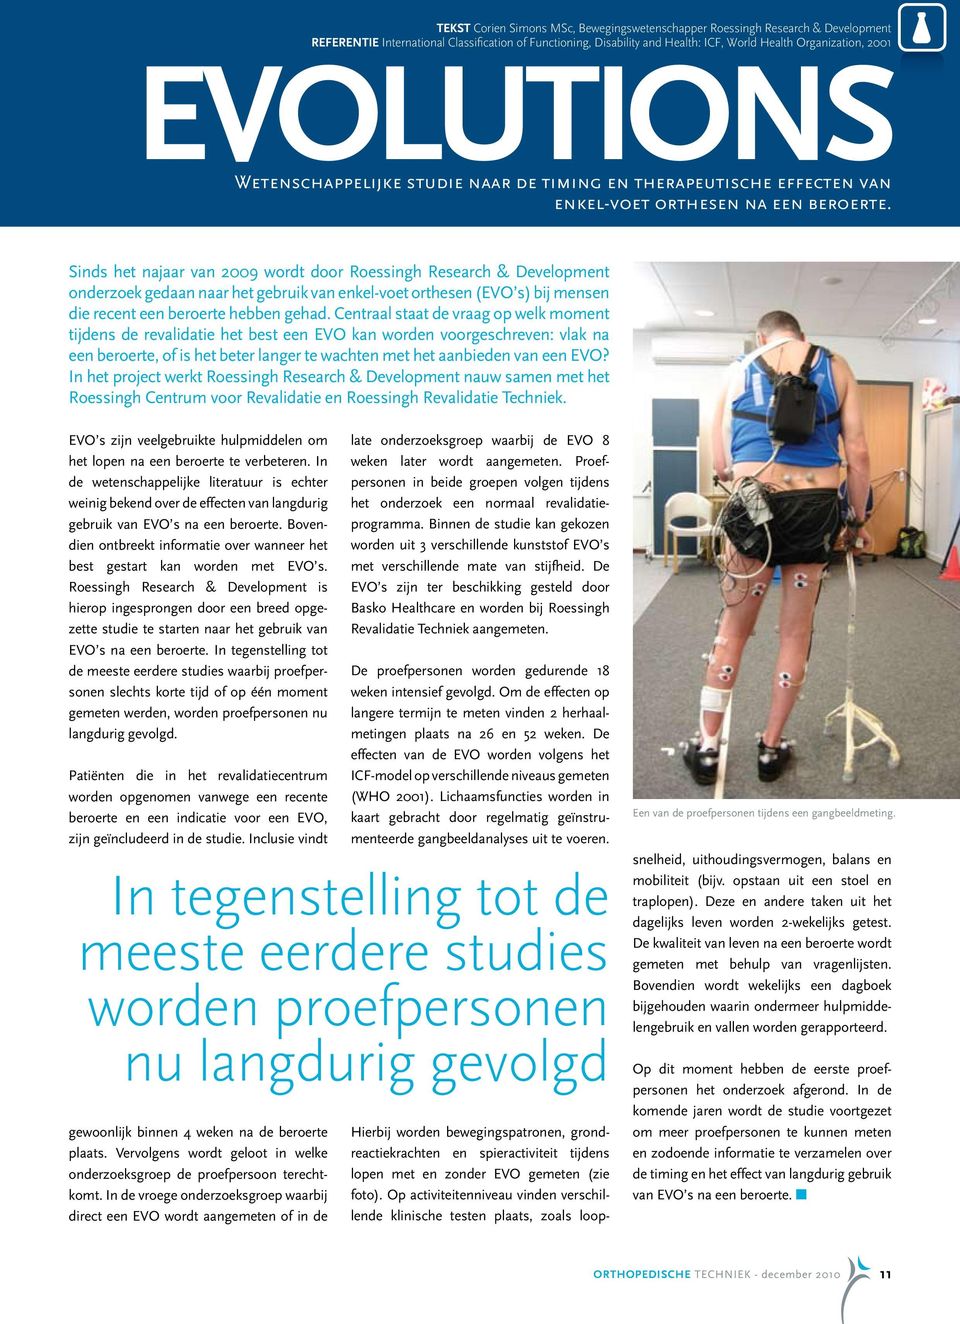 Sinds het najaar van 2009 wordt door Roessingh Research & Development onderzoek gedaan naar het gebruik van enkel-voet orthesen (EVO s) bij mensen die recent een beroerte hebben gehad.